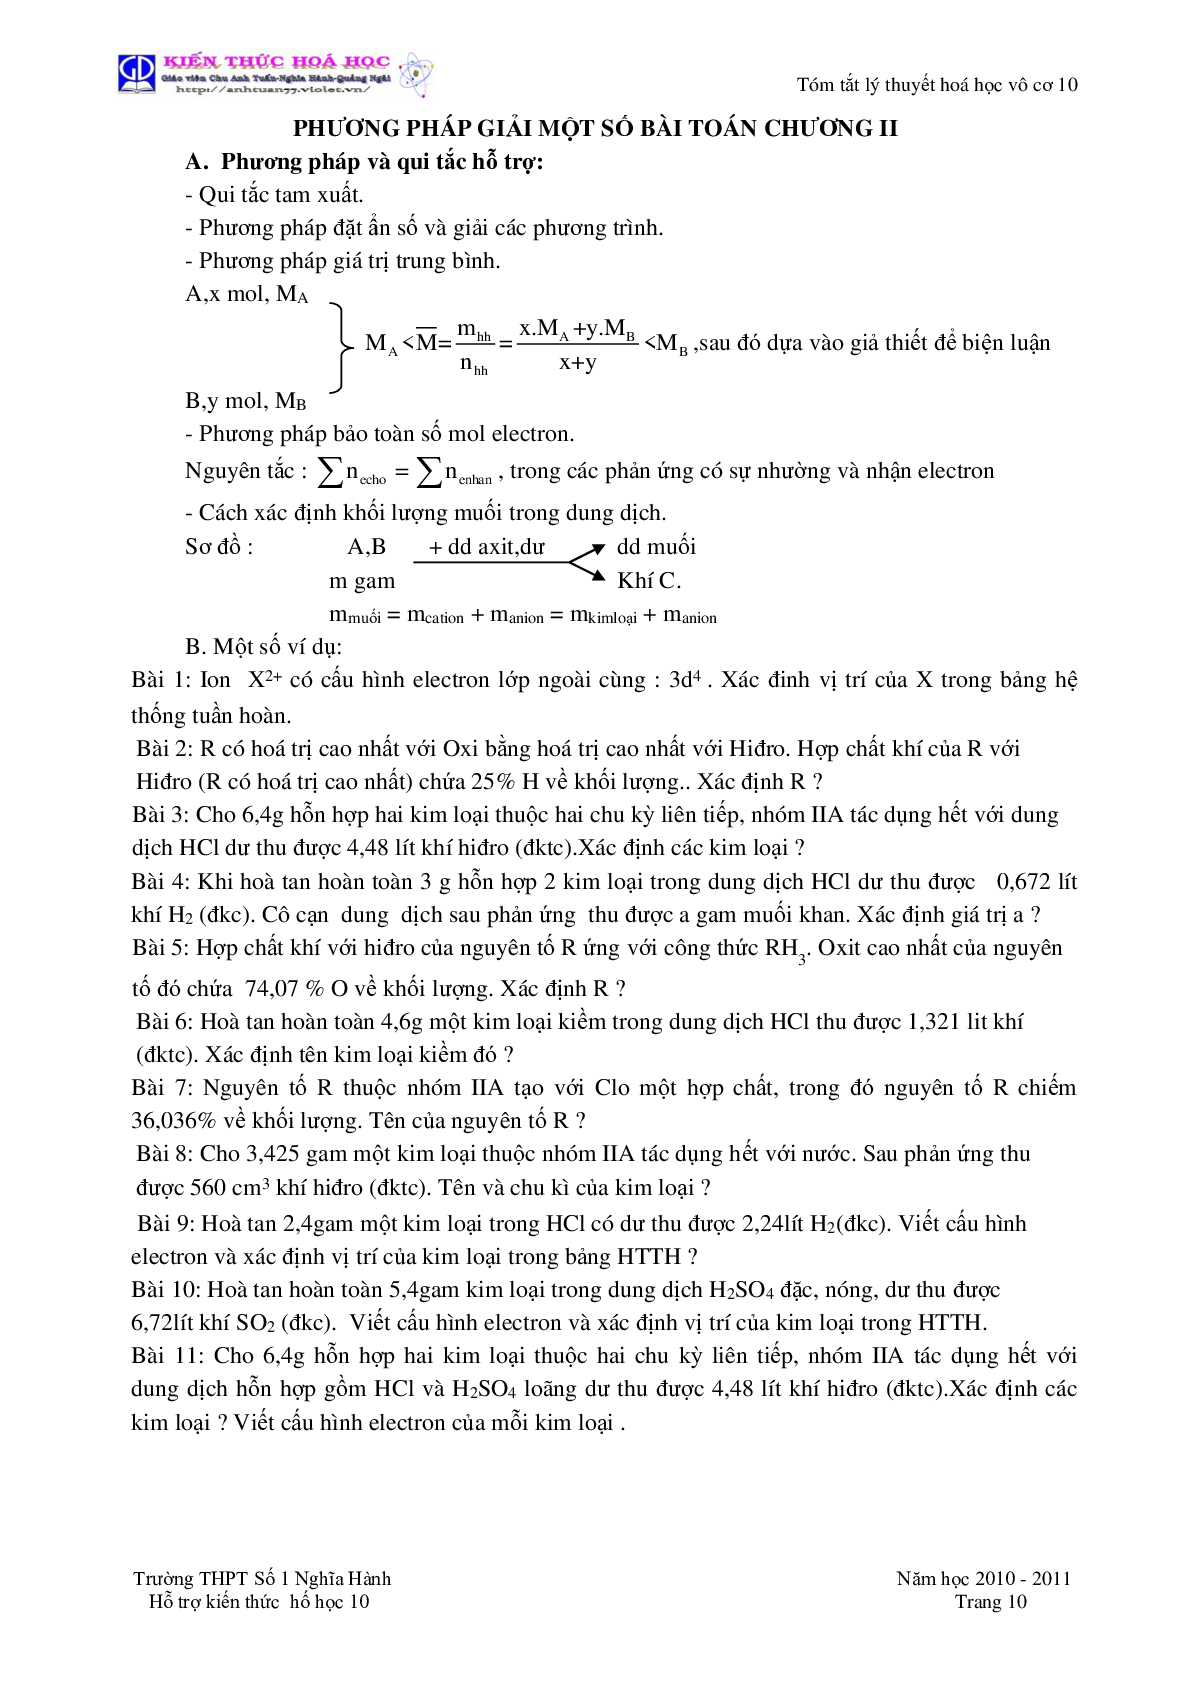 Tóm tắt lý thuyết môn Hóa Học lớp 10 (trang 10)